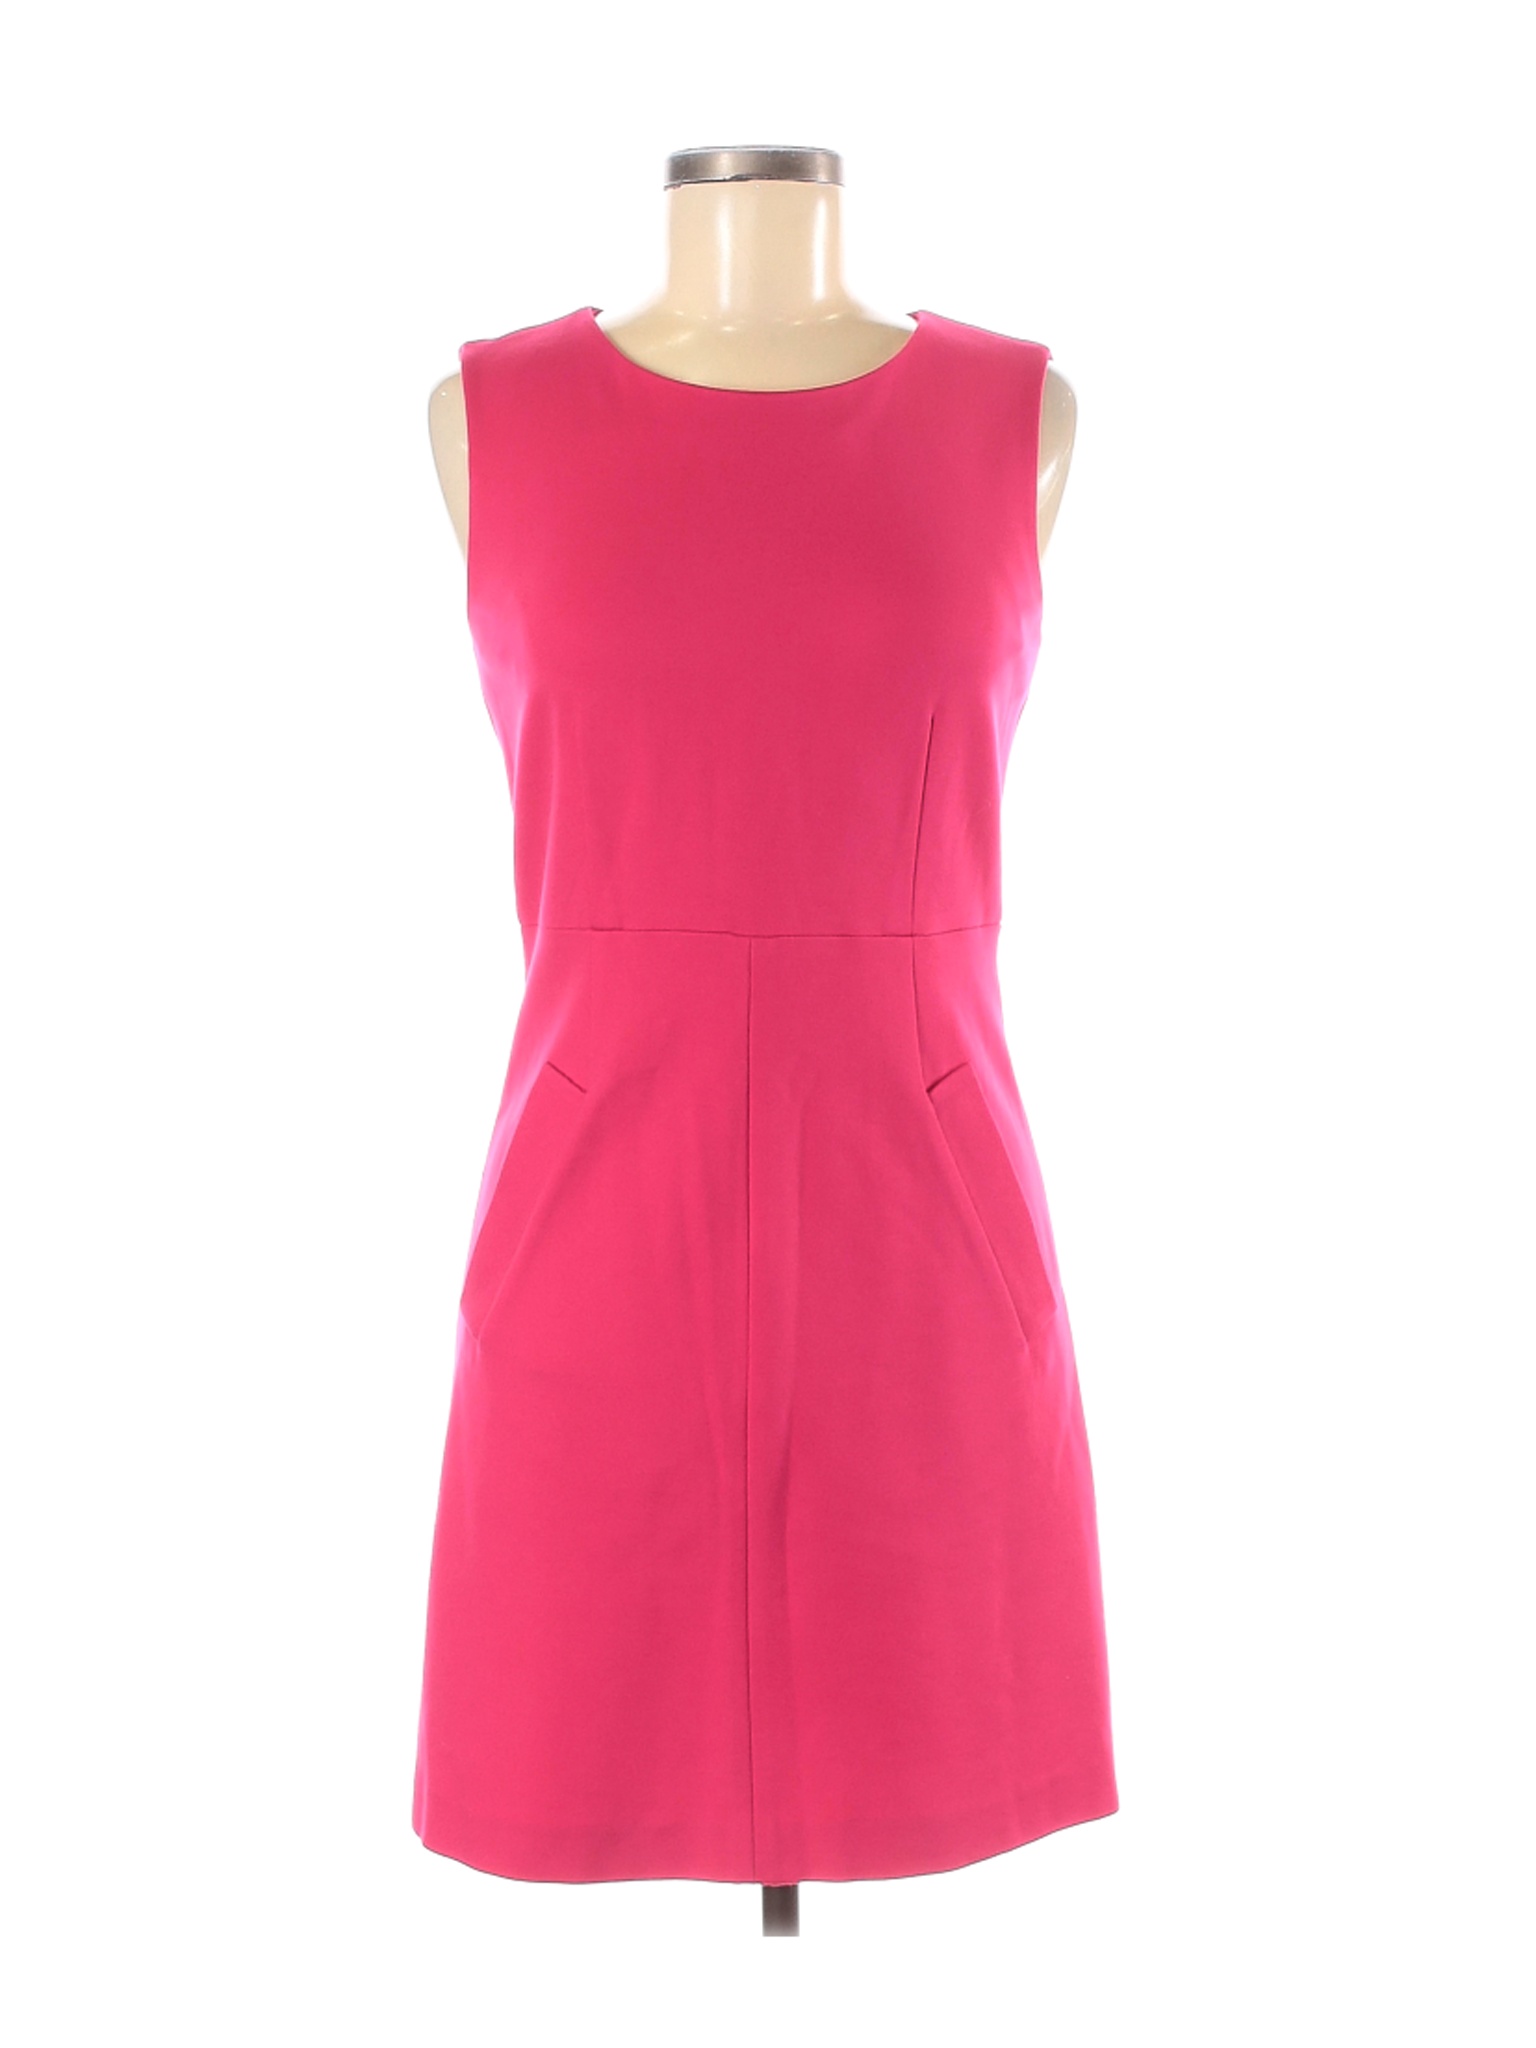 NWT Diane von Furstenberg Women Pink Casual Dress 6 | eBay